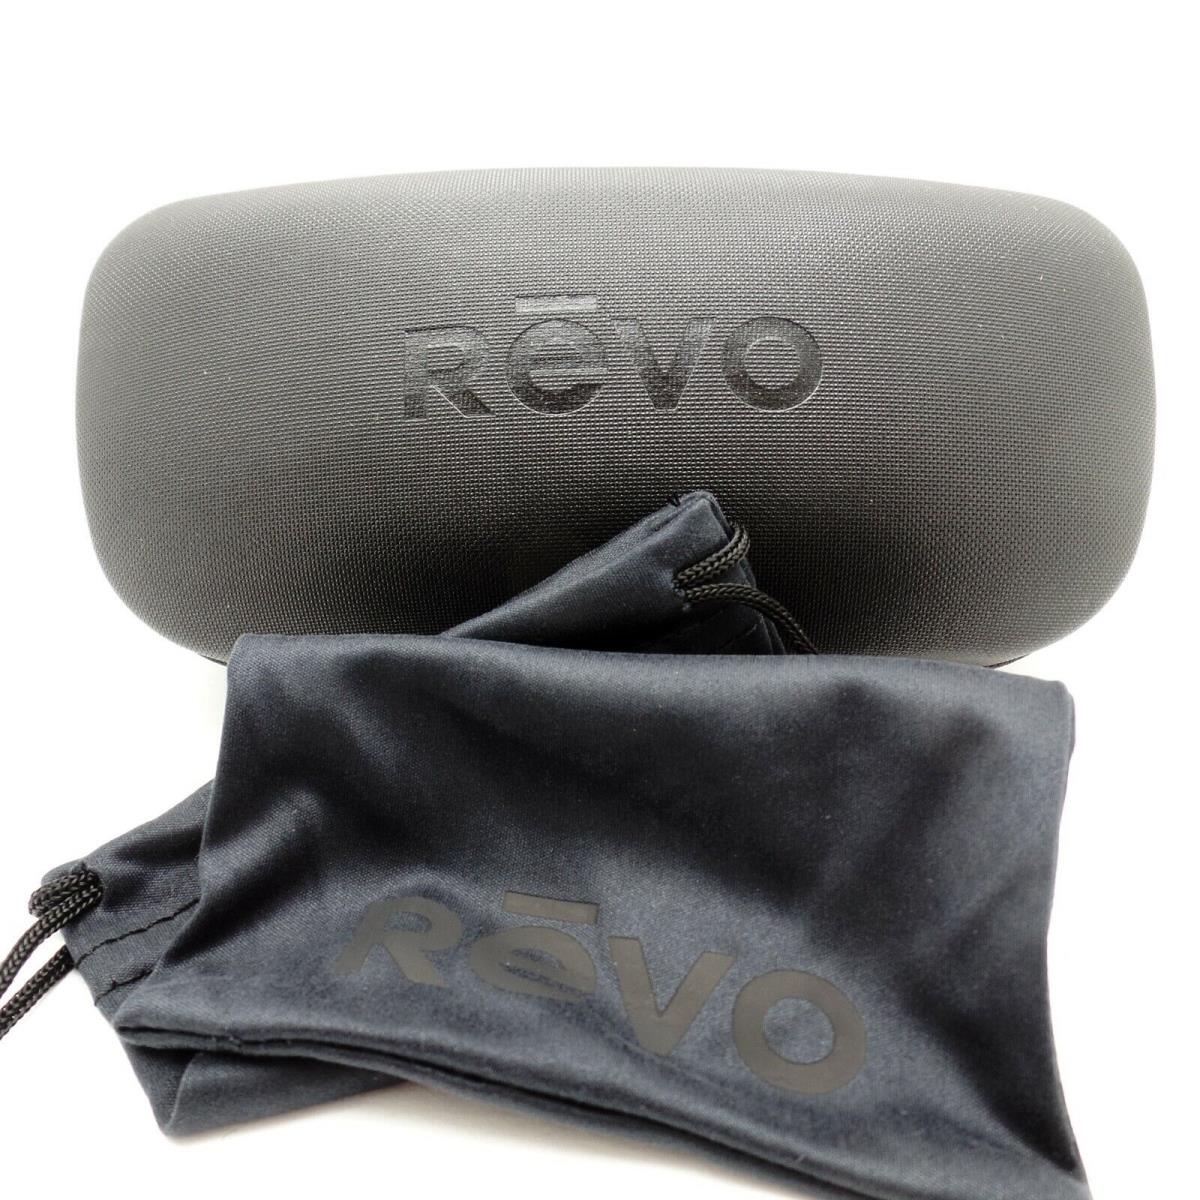 Revo sunglasses Dexter - Tortoise Matte Frame, Smoky Green Lens